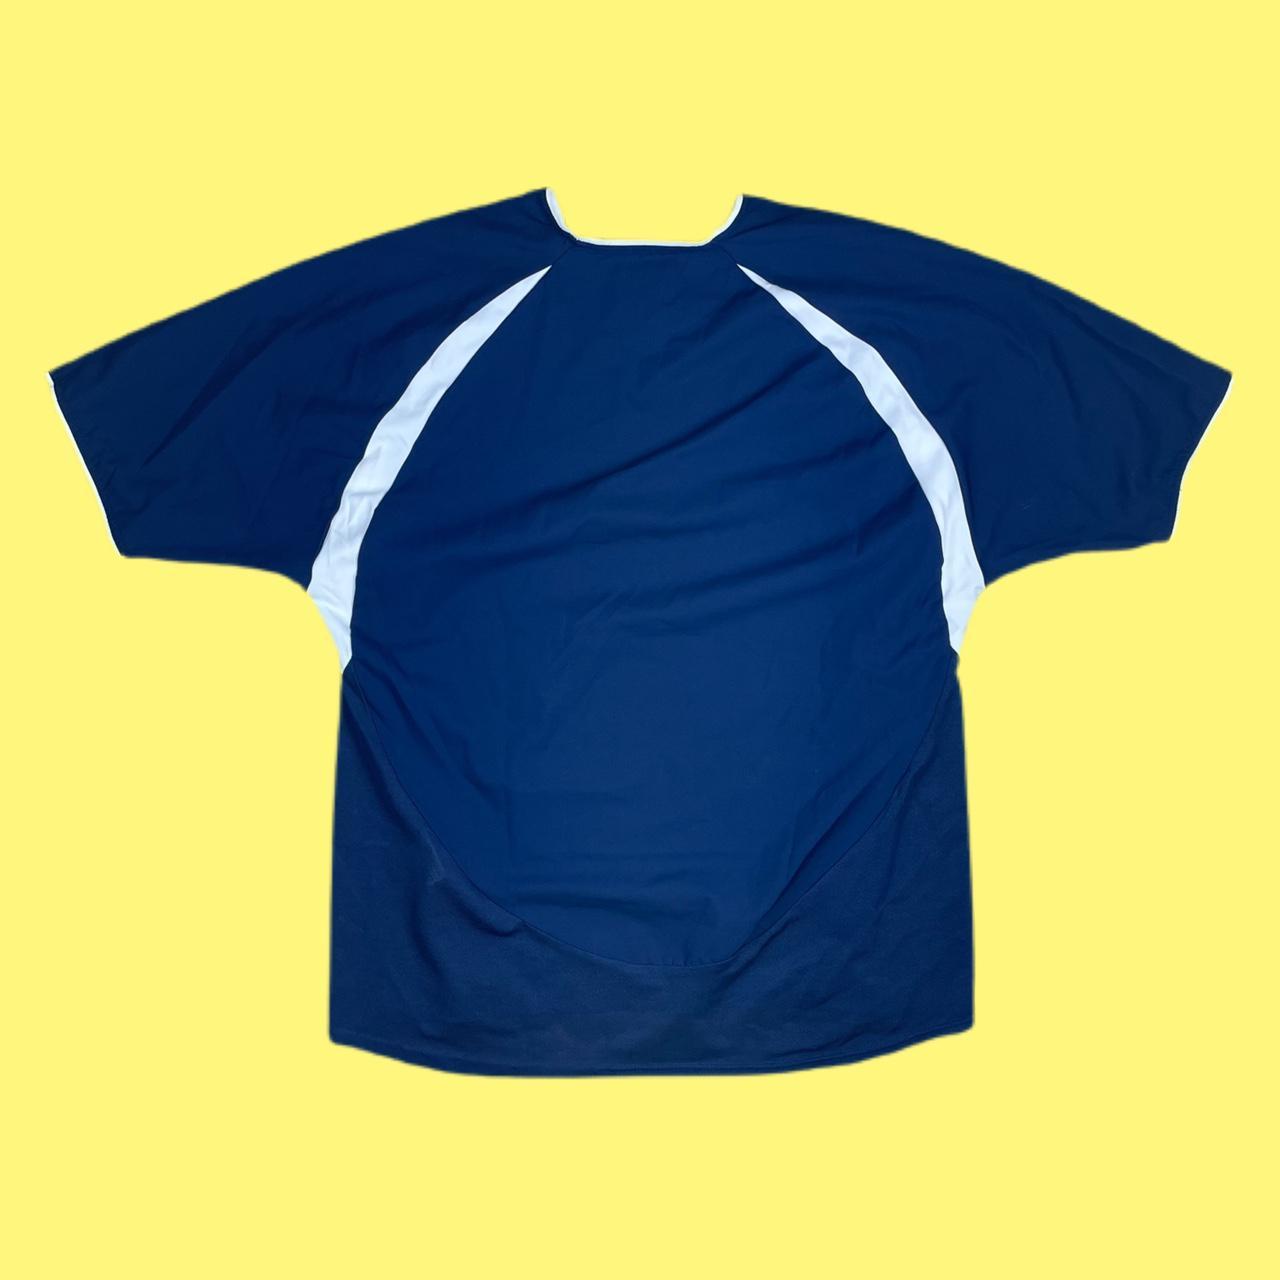 Diadora Men's Navy and Yellow T-shirt | Depop